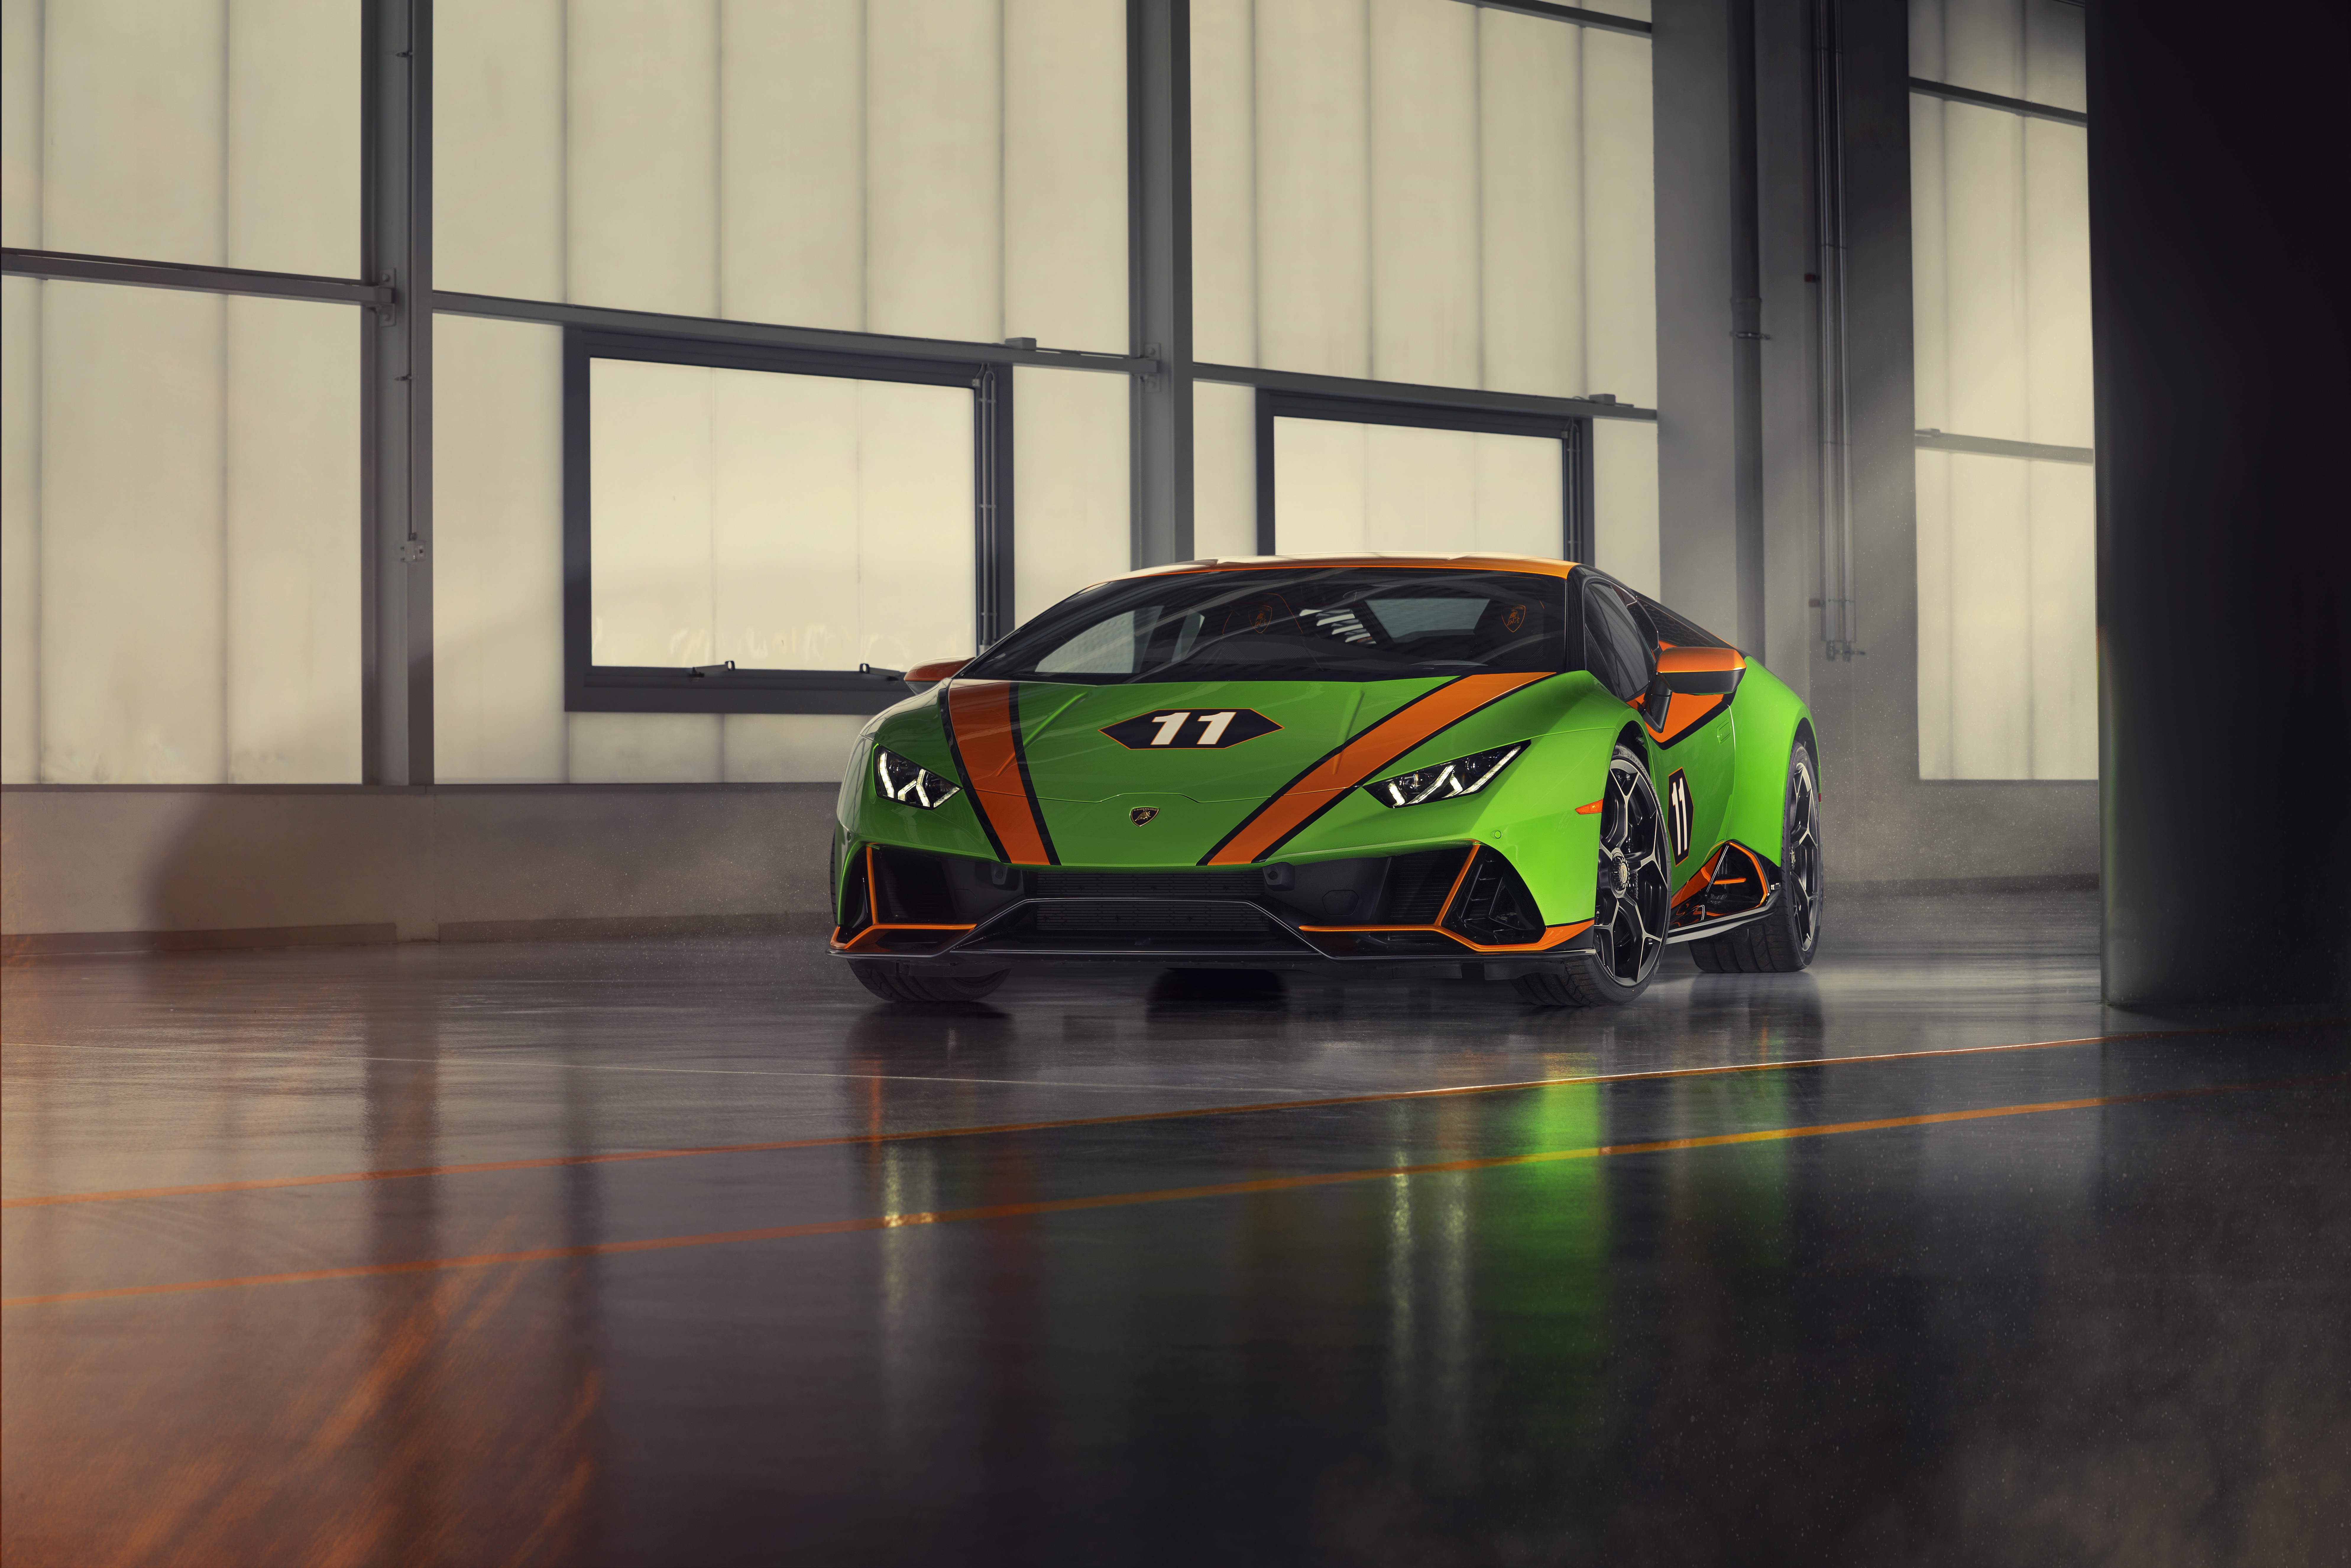 Télécharger des fonds d'écran Célébration De La Lamborghini Huracán Evo Gt HD